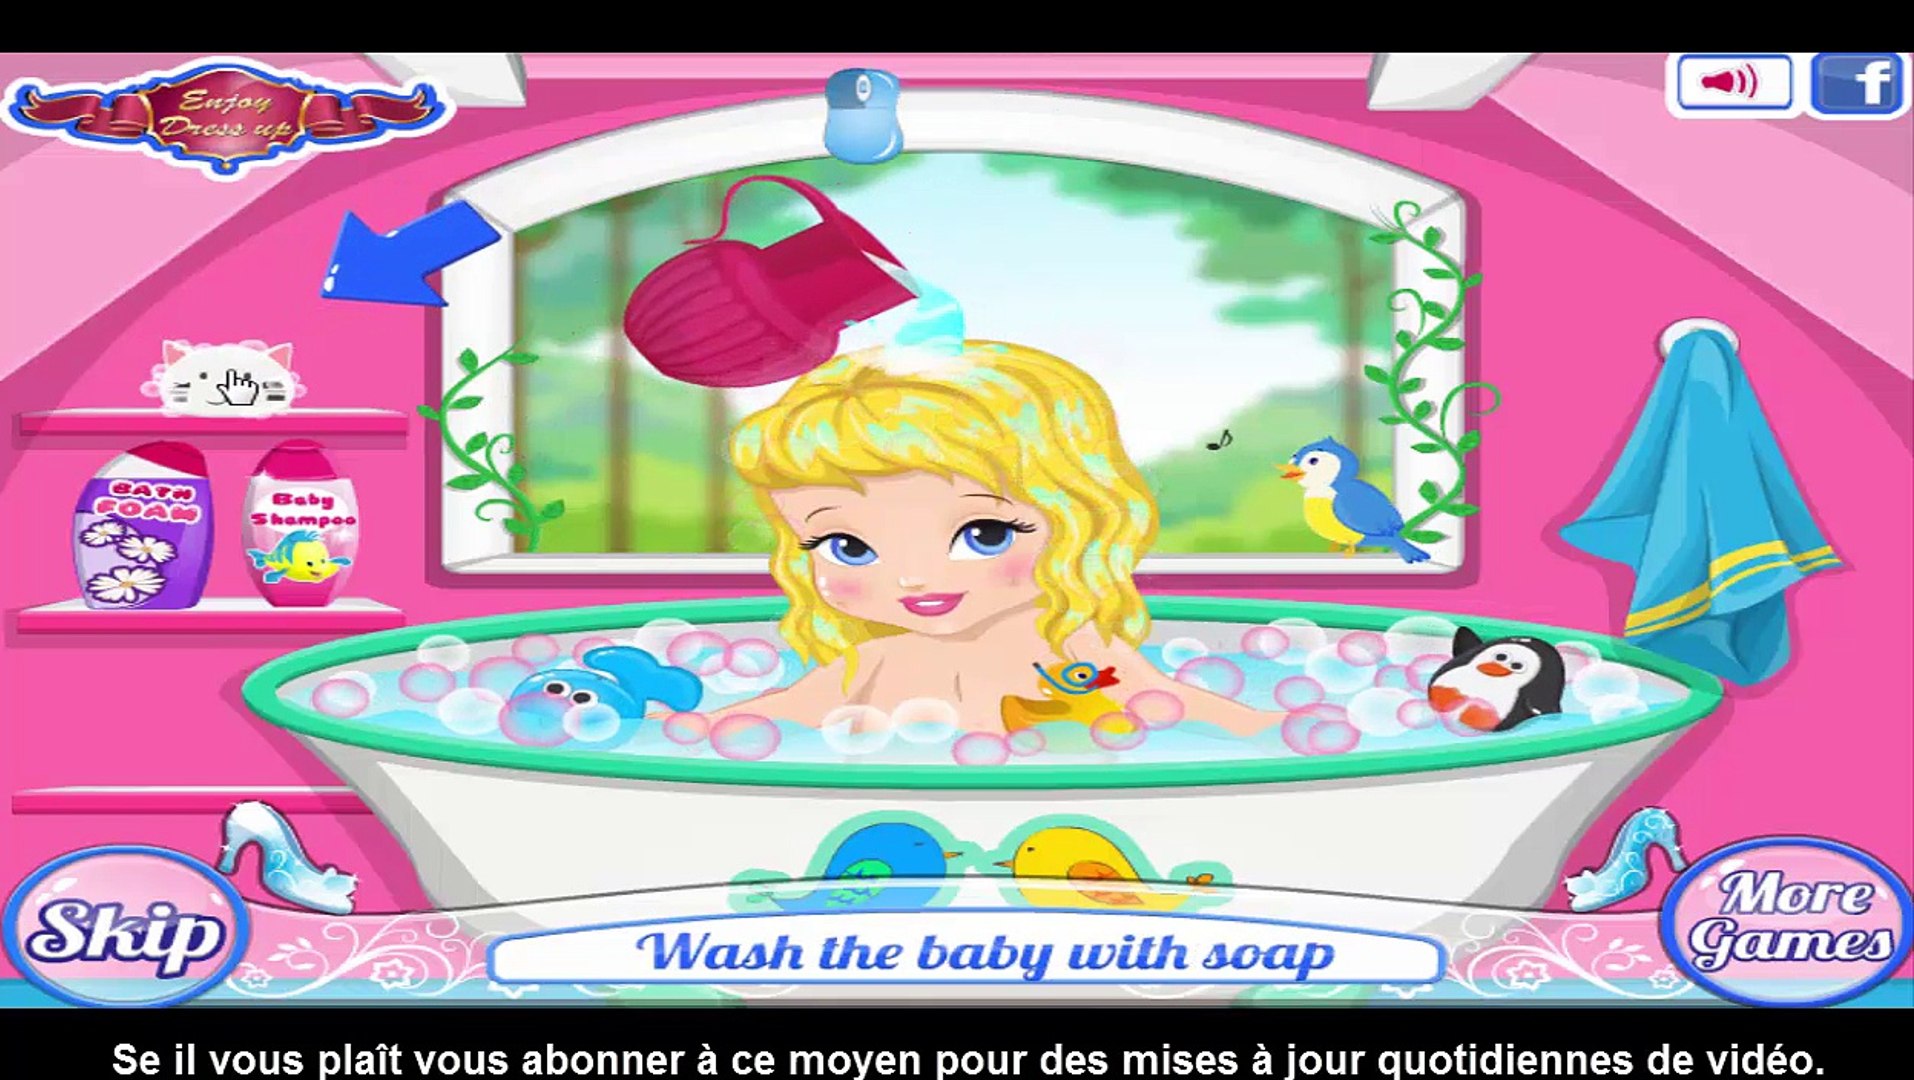 ديزني الأميرة سندريلا الأحذية حمام لعبة للأطفال - video Dailymotion